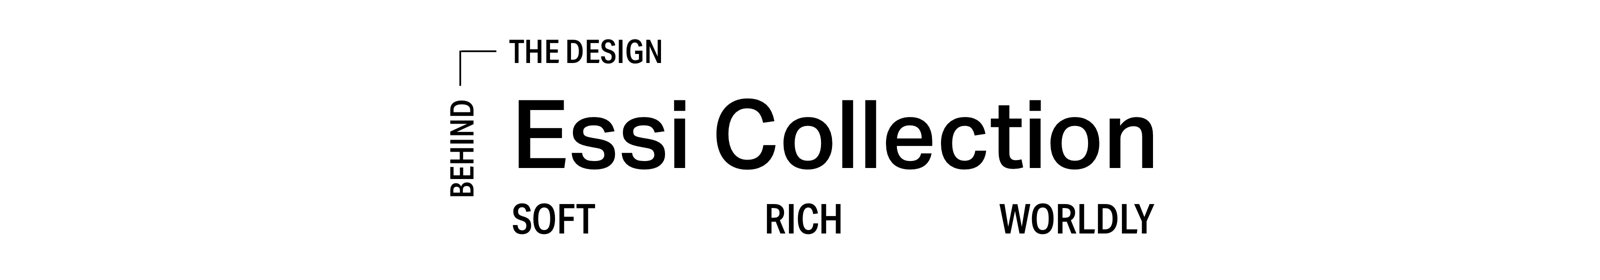 Essi Collection. Soft, rich, worldy 